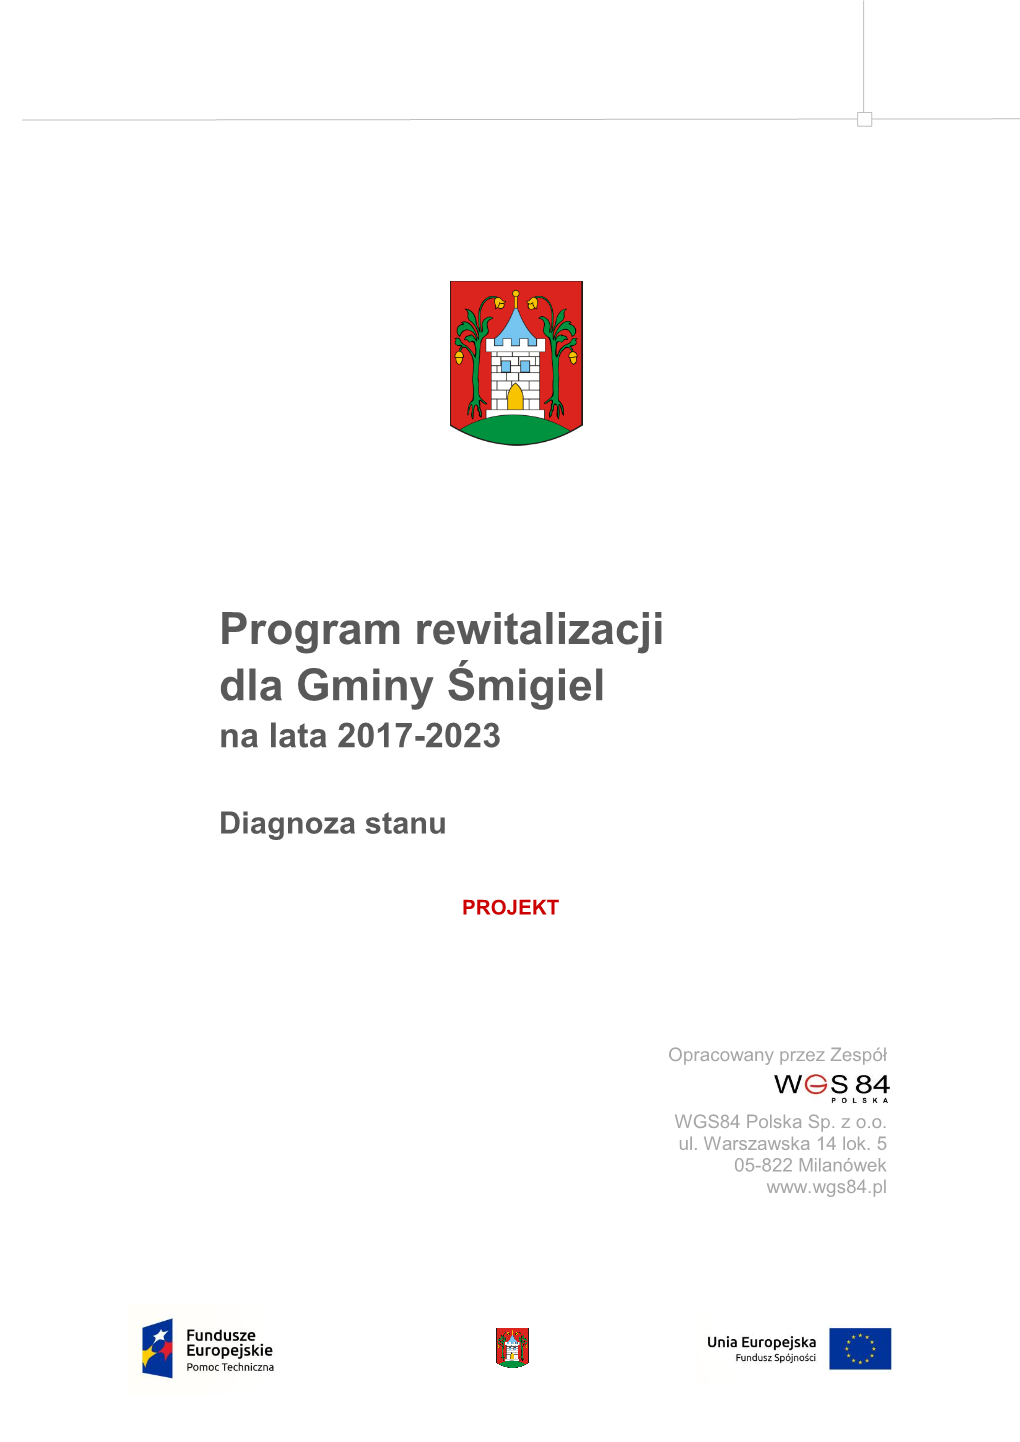 Program Rewitalizacji Dla Gminy Śmigiel Na Lata 2017-2023